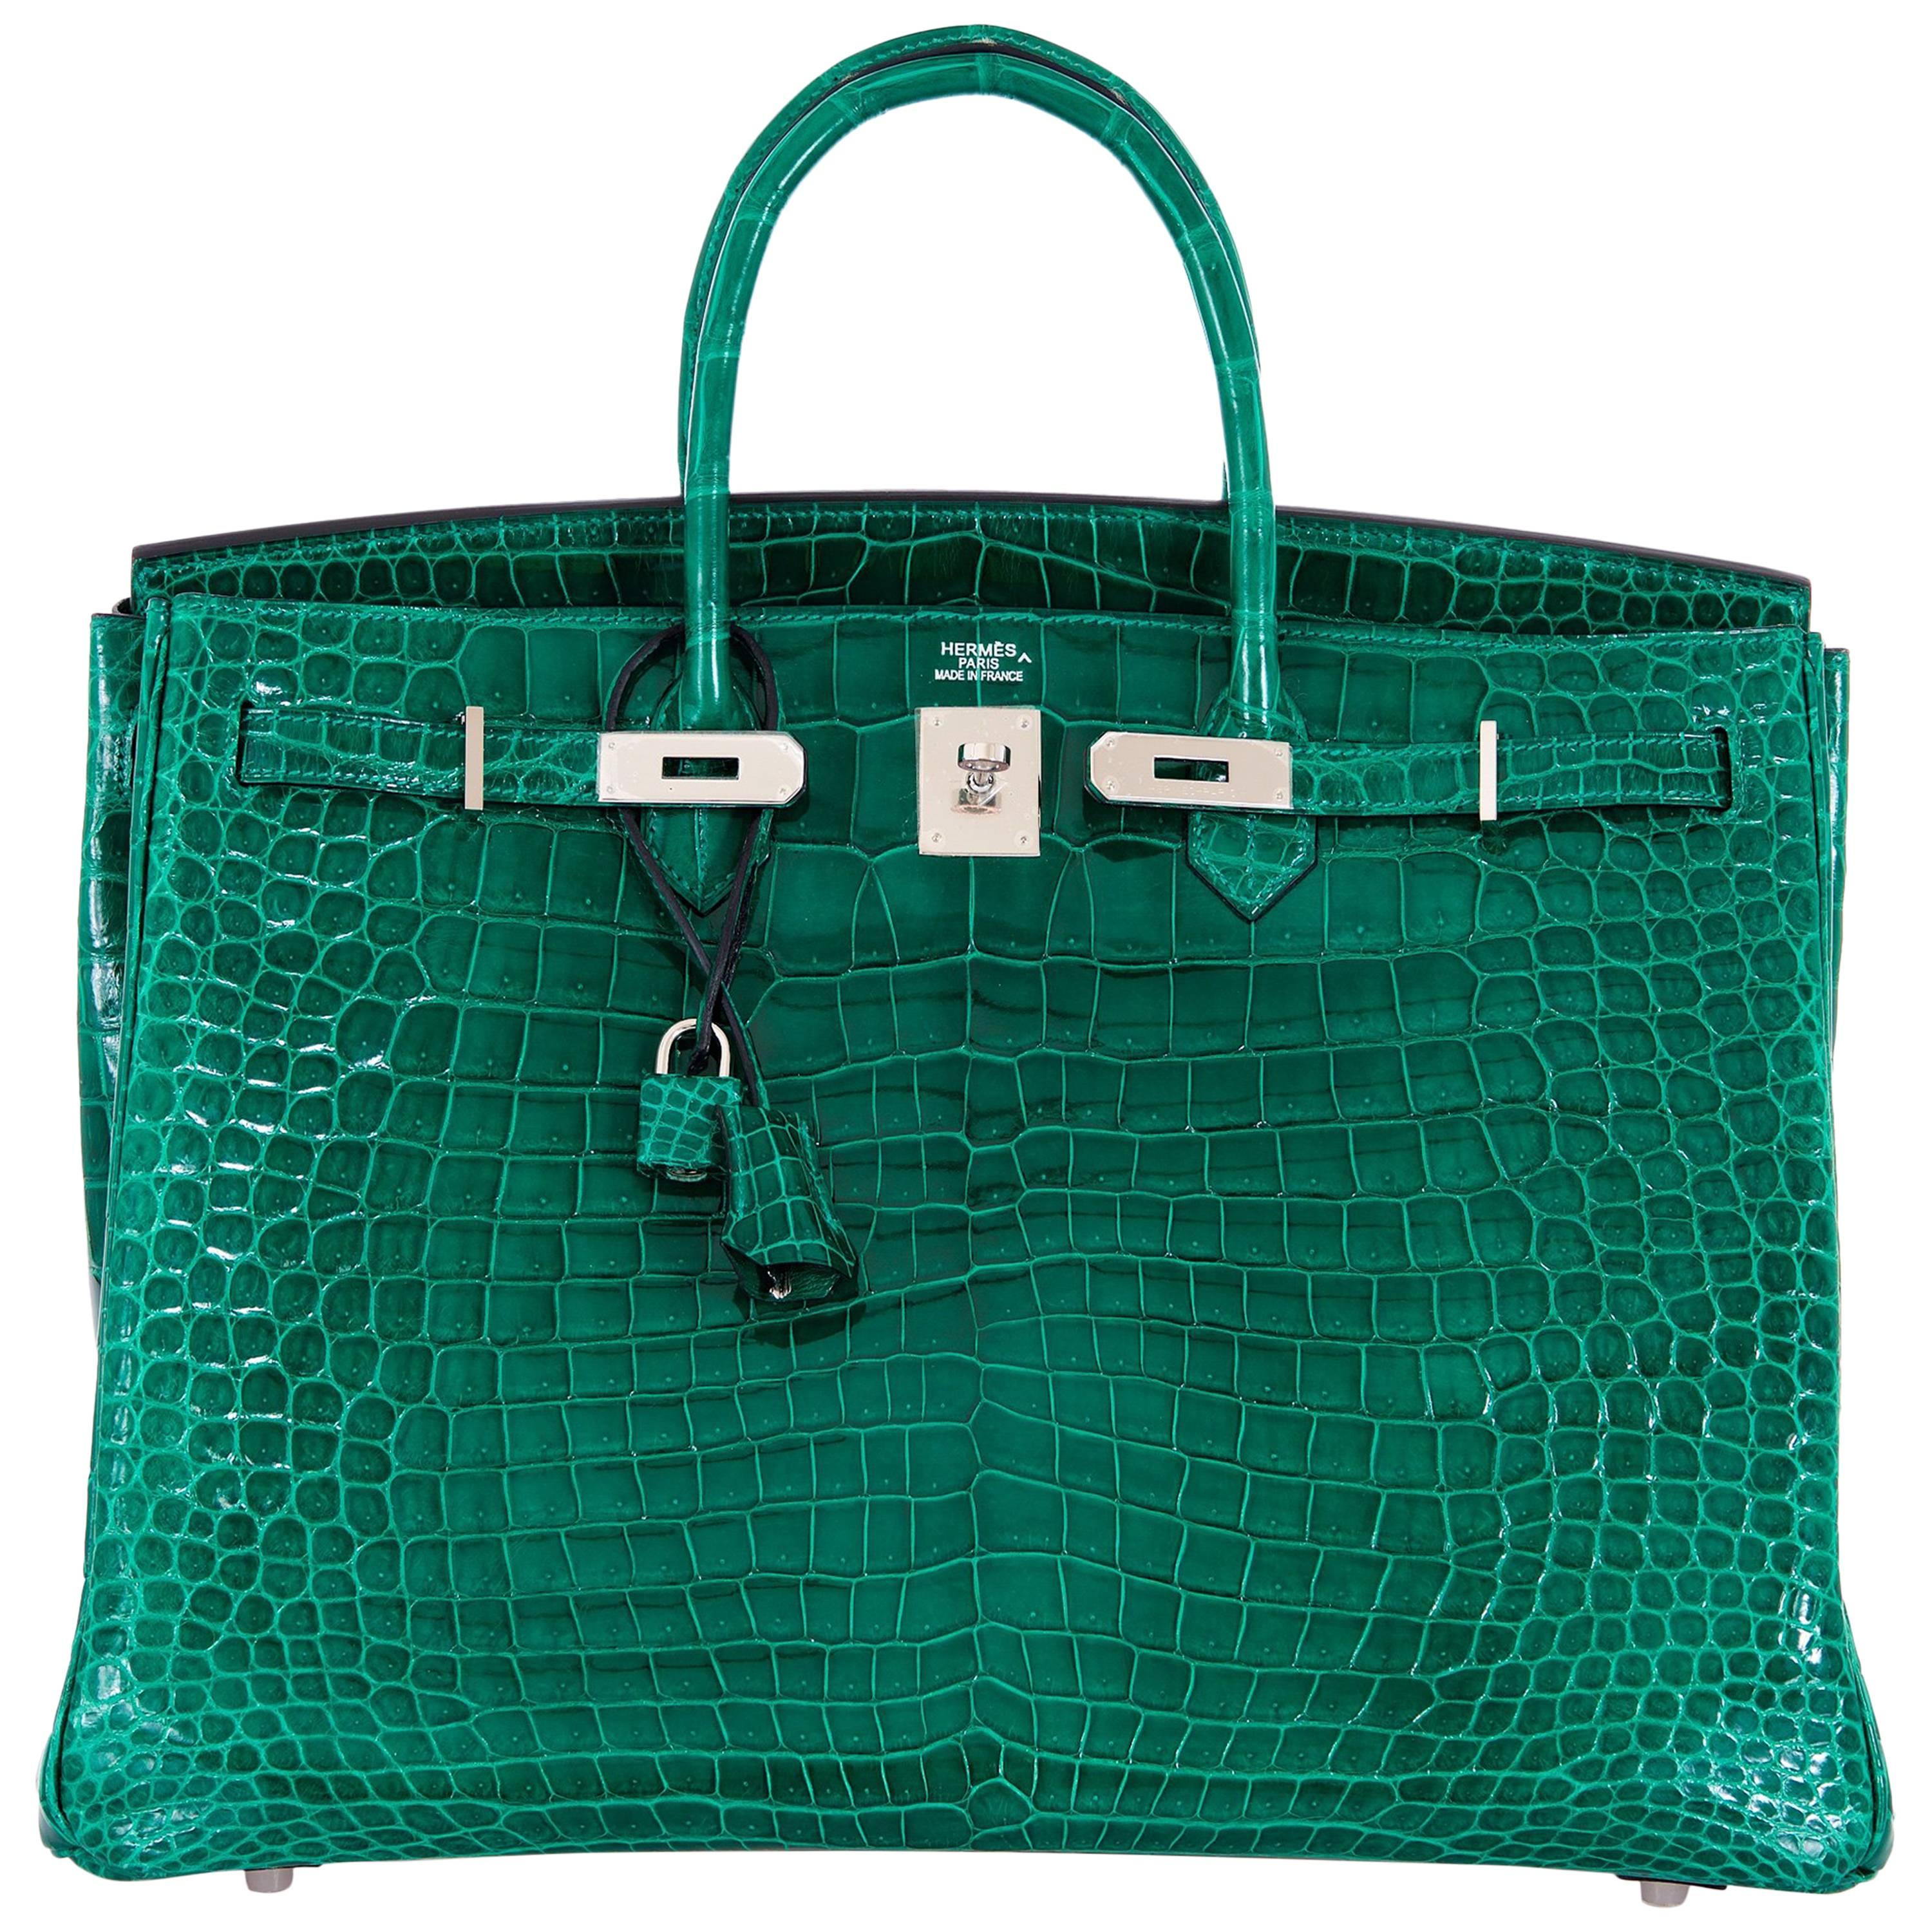 Hermes Birkin Bag 40cm Vert Emerald Porosus Crocodile Impossible Find For Sale